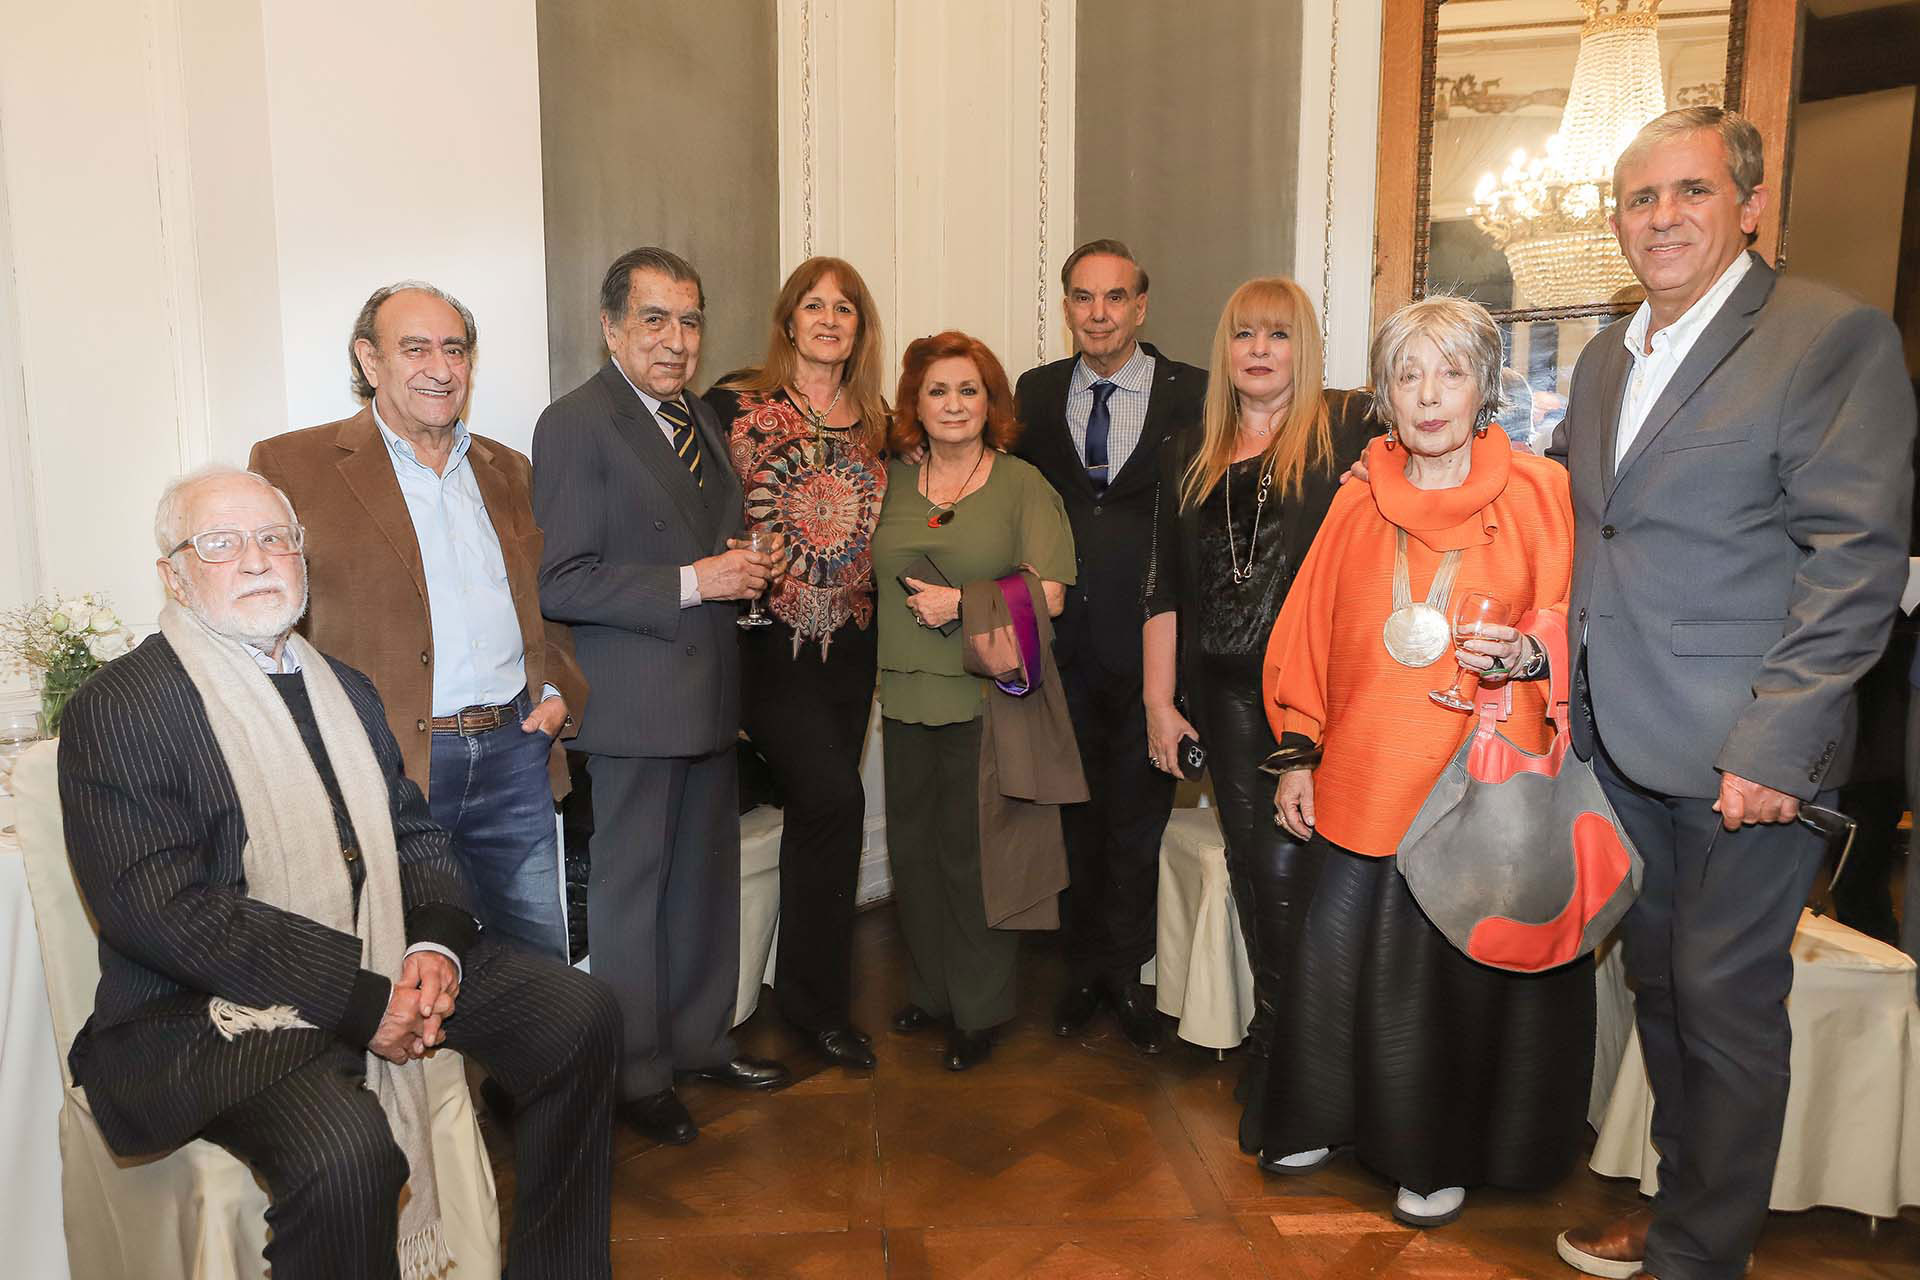 60 fotos: el festejo de cumpleaños de Teresa González Fernández junto a políticos, empresarios y referentes de la cultura 